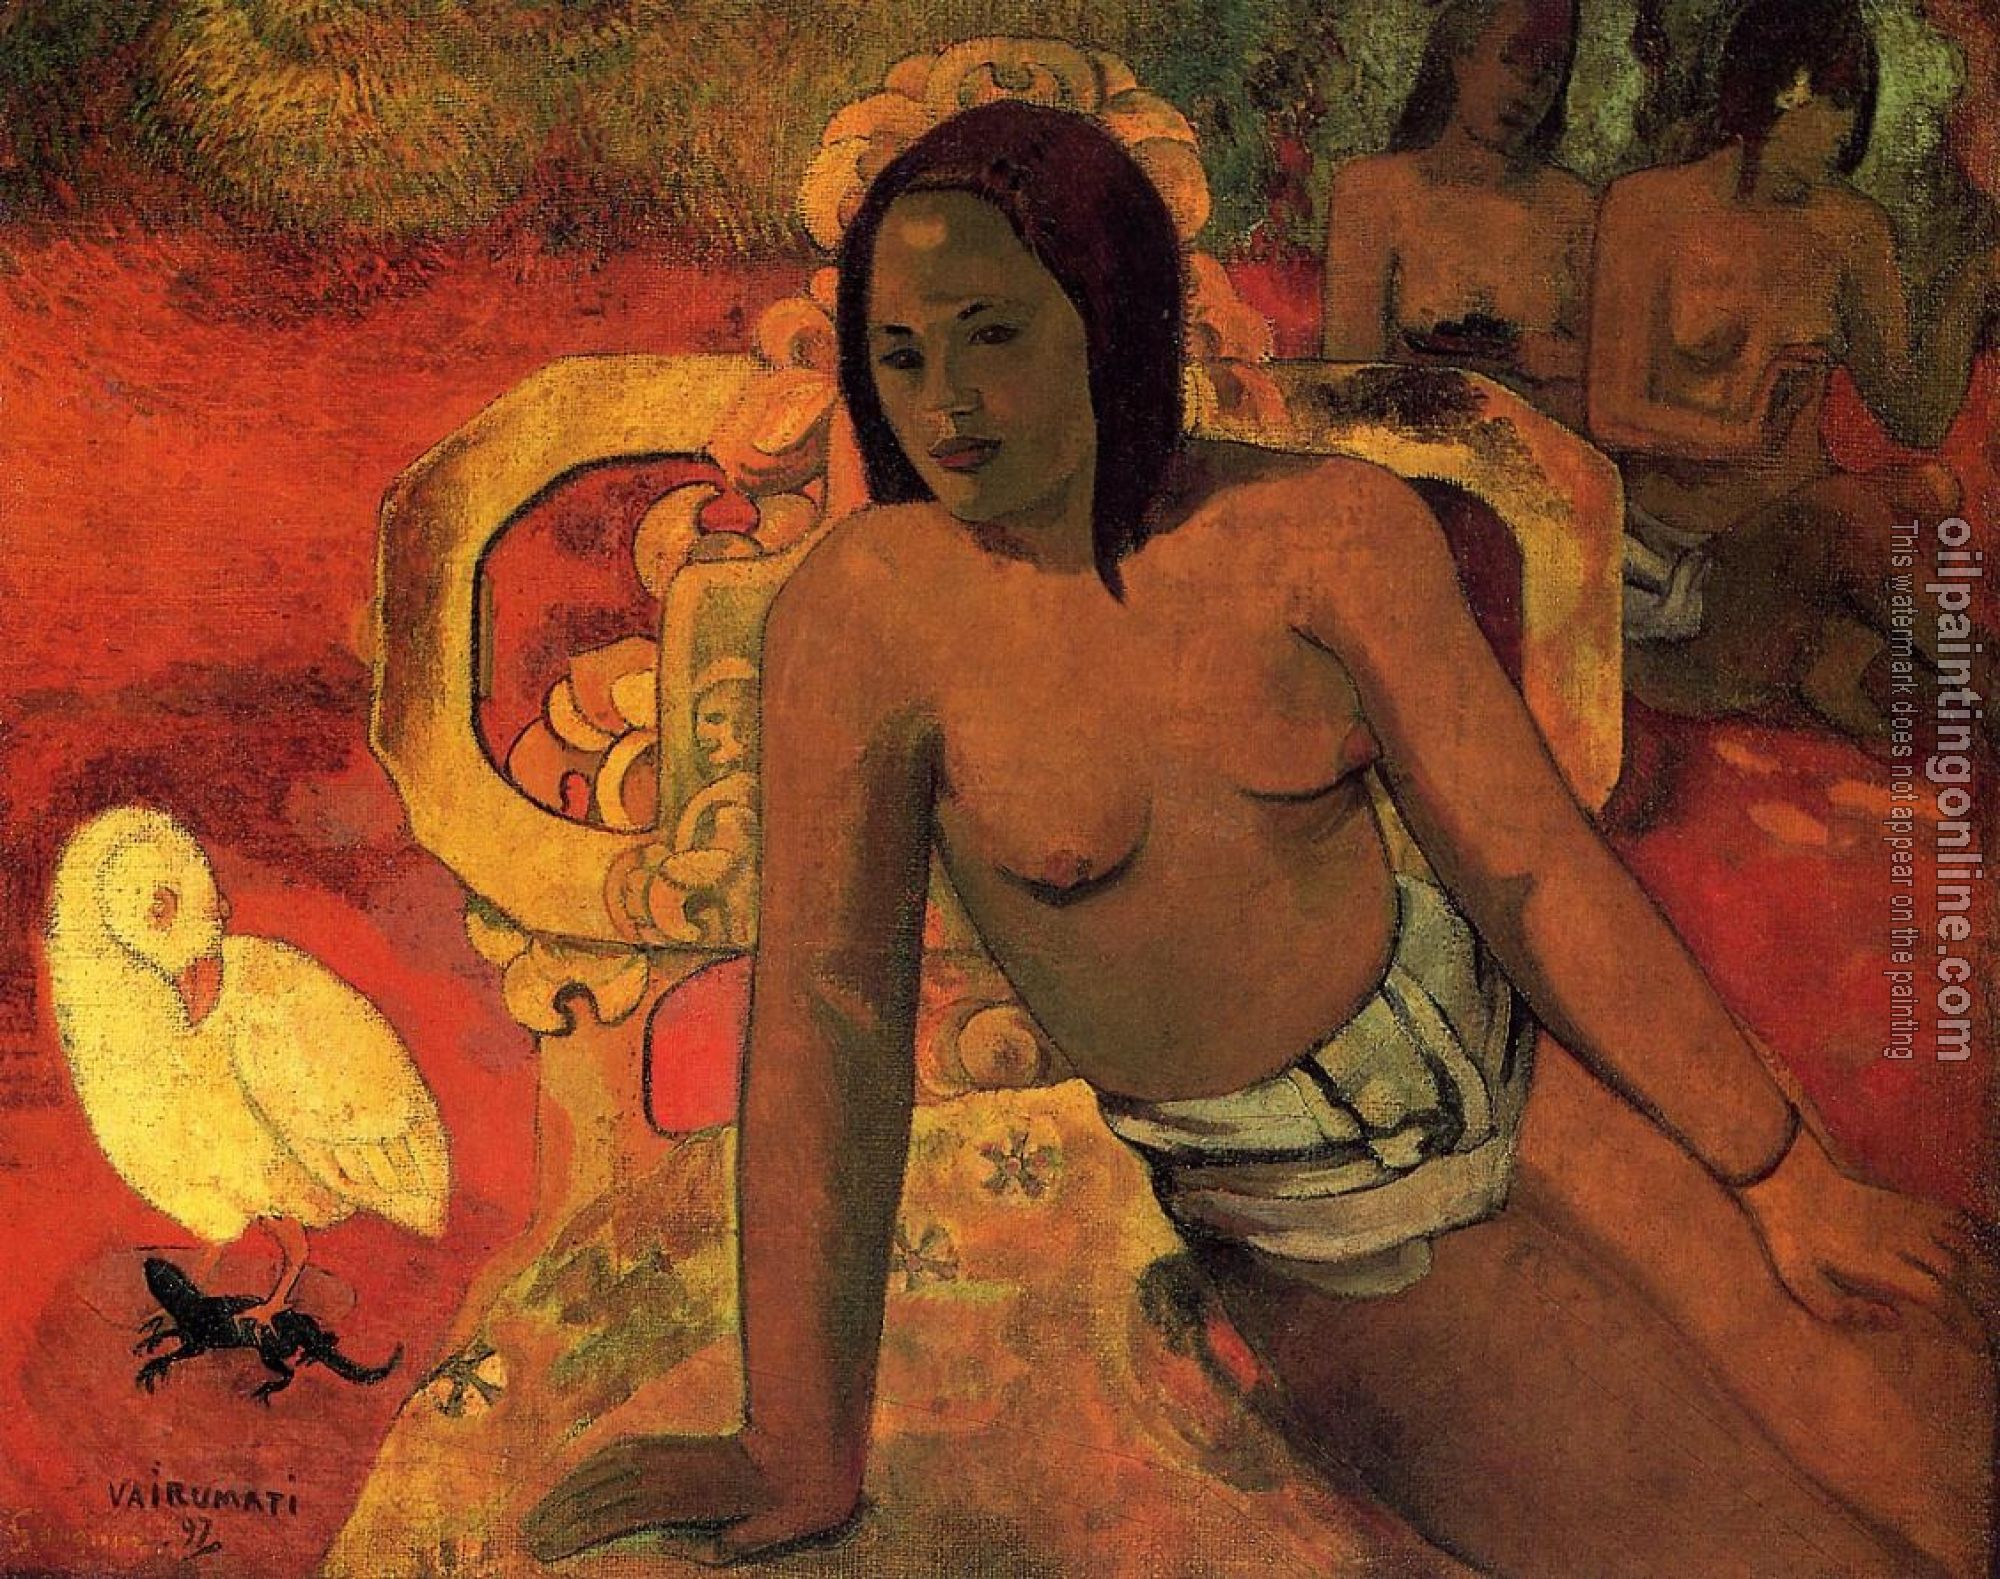 Gauguin, Paul - Vairumati